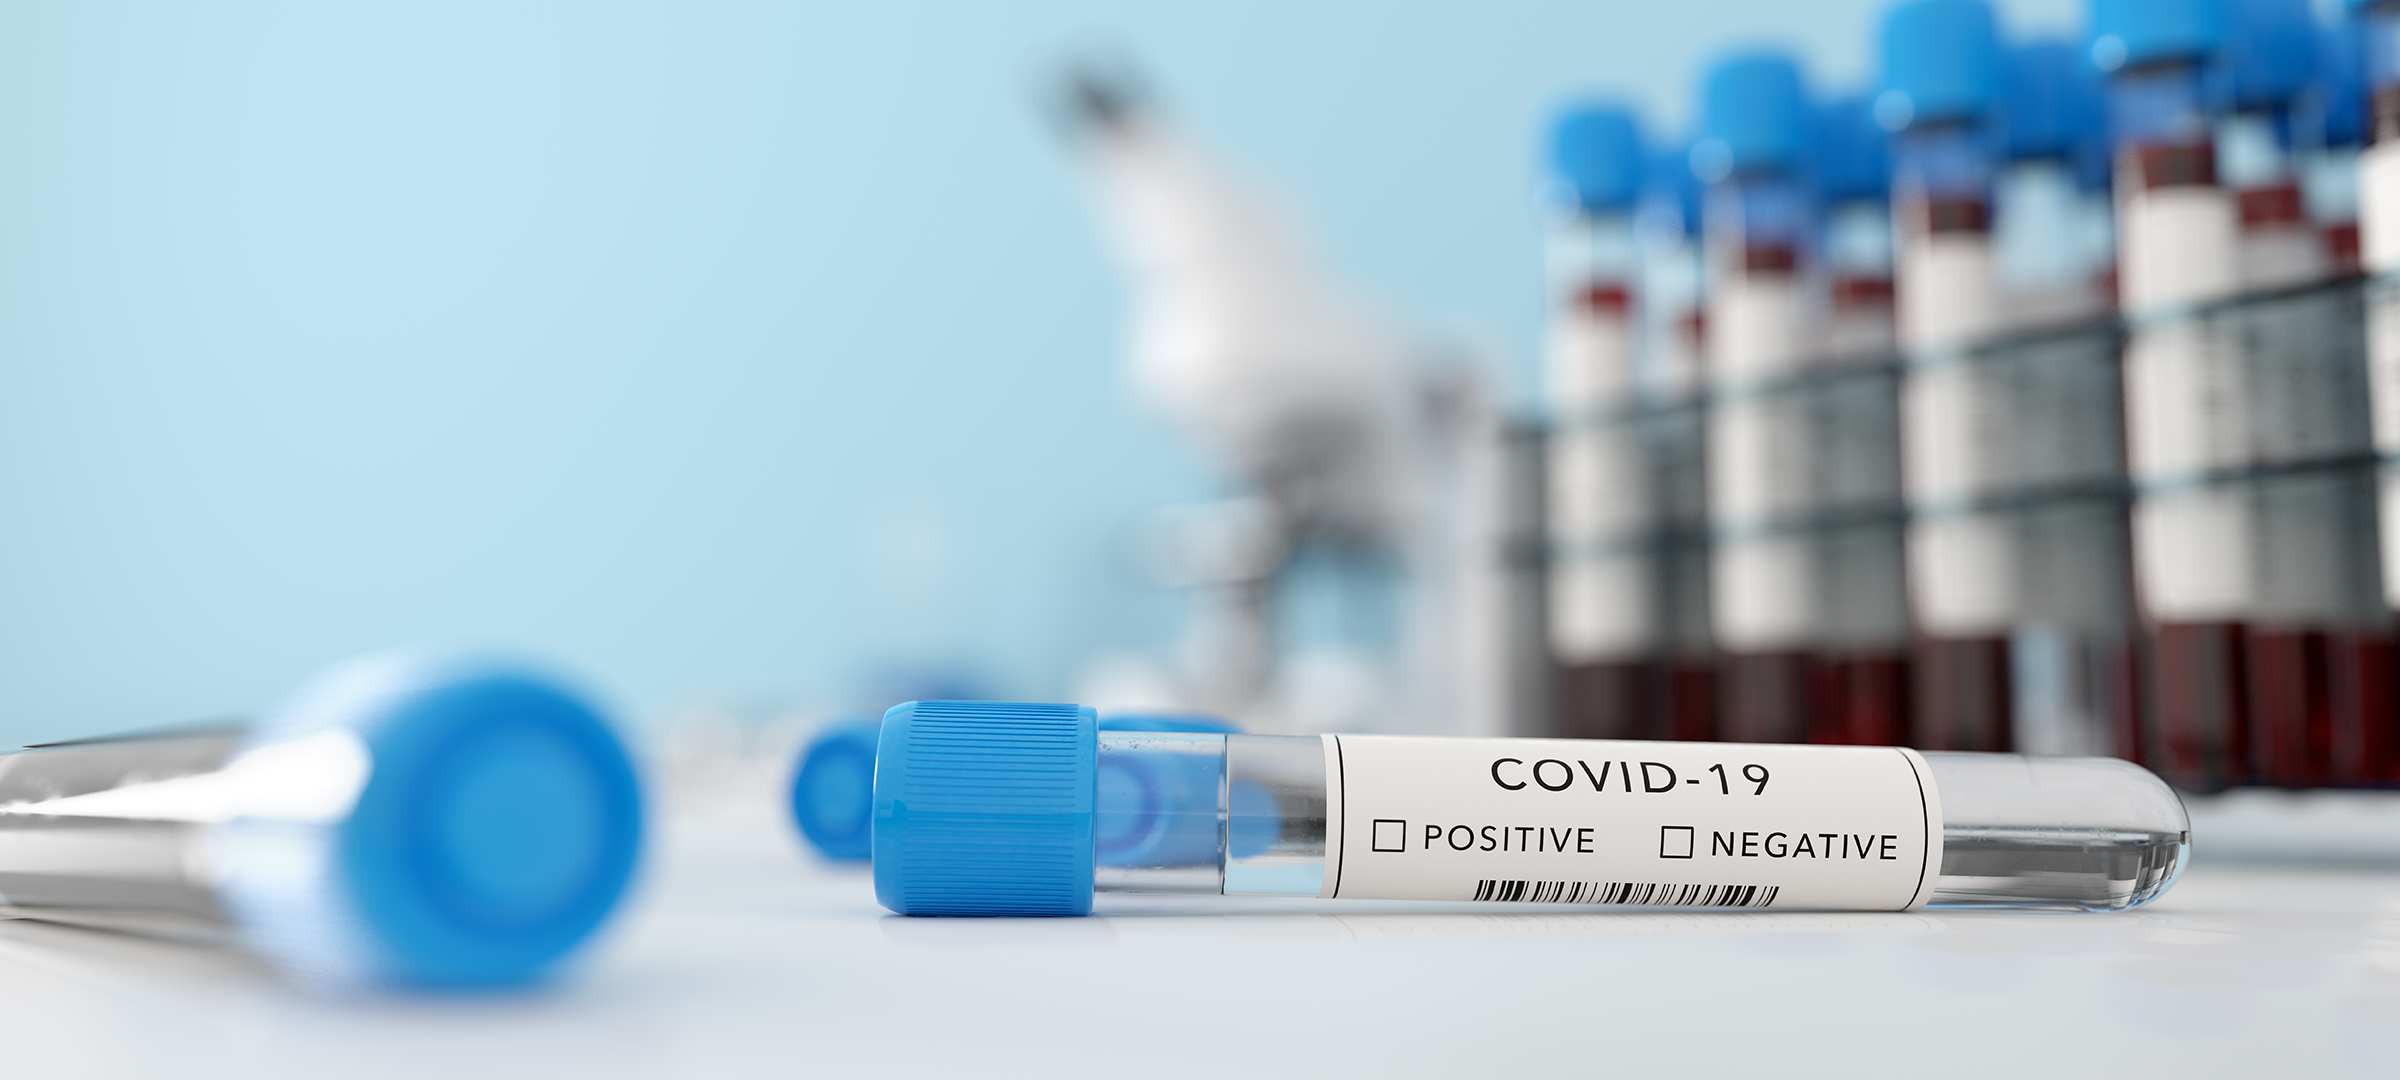 Fondo desenfocado con viarios frascos de medicinas sobre una mesa y en primer plano una vacuna de COVID-19 que Elon Musk CEO de Tesla minimiza la amenaza del coronavirus